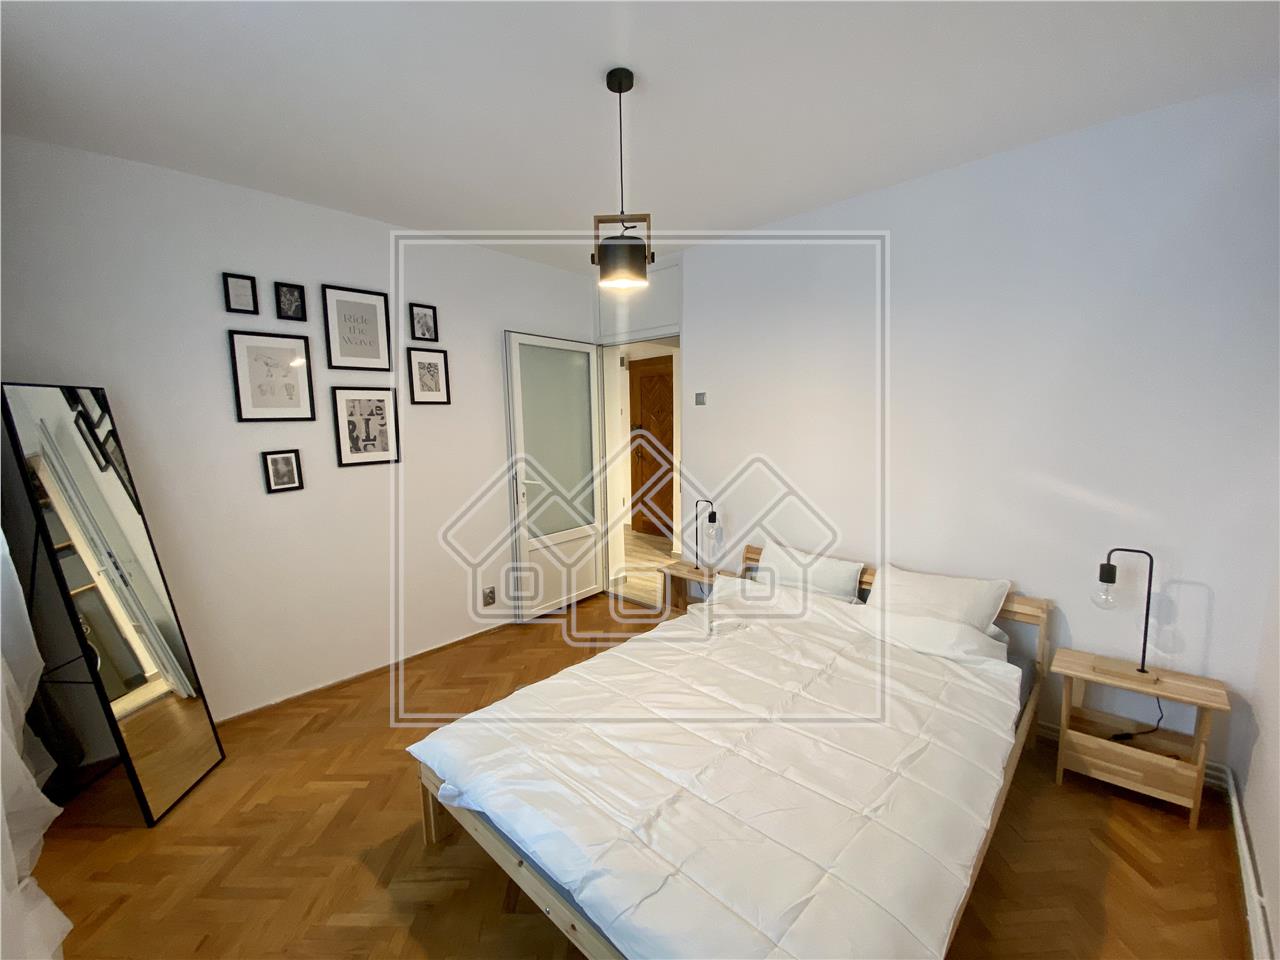 Apartament de inchiriat in Sibiu - 2 camere -mobilat utilat- V. Aurie